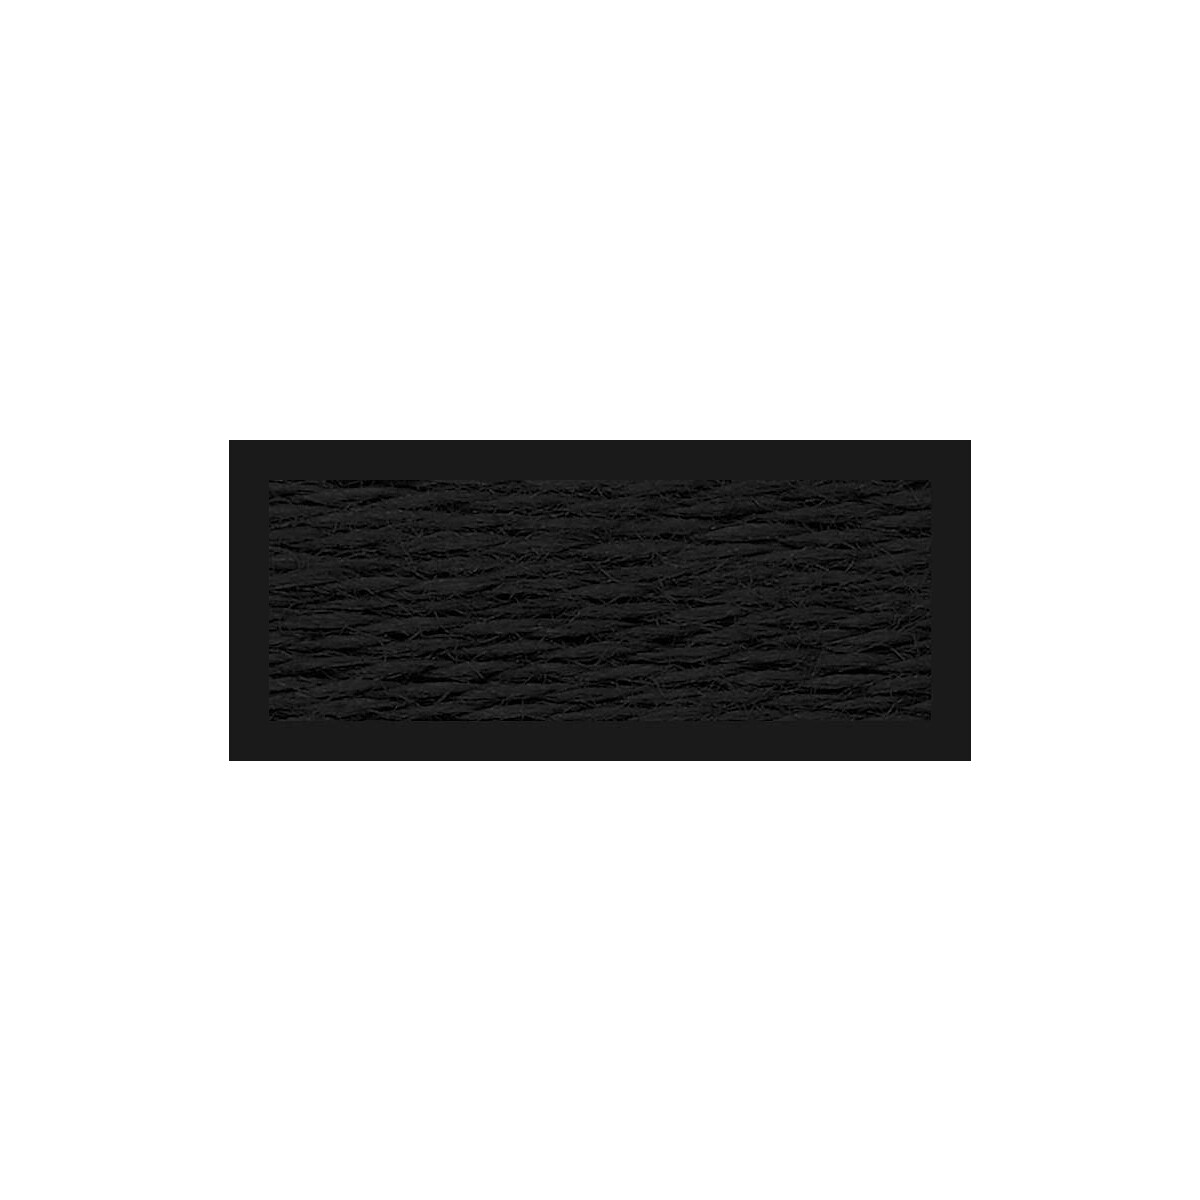 RIOLIS Stickgarn S900 Woll/ Acrylgarn, 1 x 20m, 1-fädig